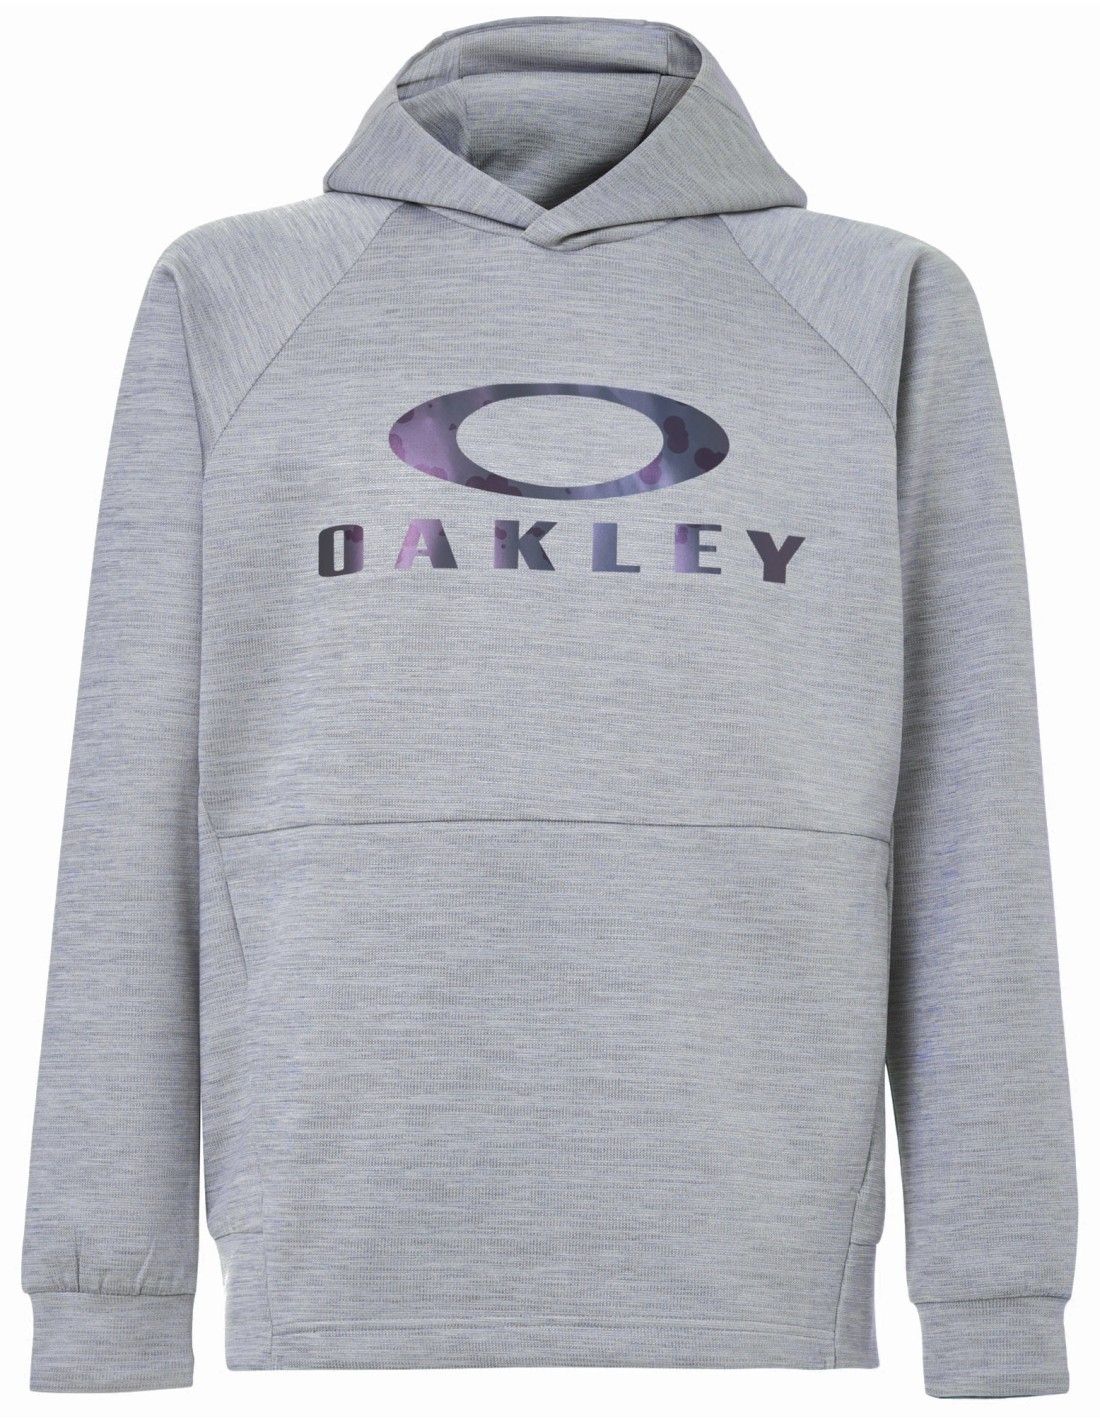 Oakley Enhance Qd Fleece Hoody 11.0 - Liquid-Life #Wähle Deine Farbe_New Athletic Grey